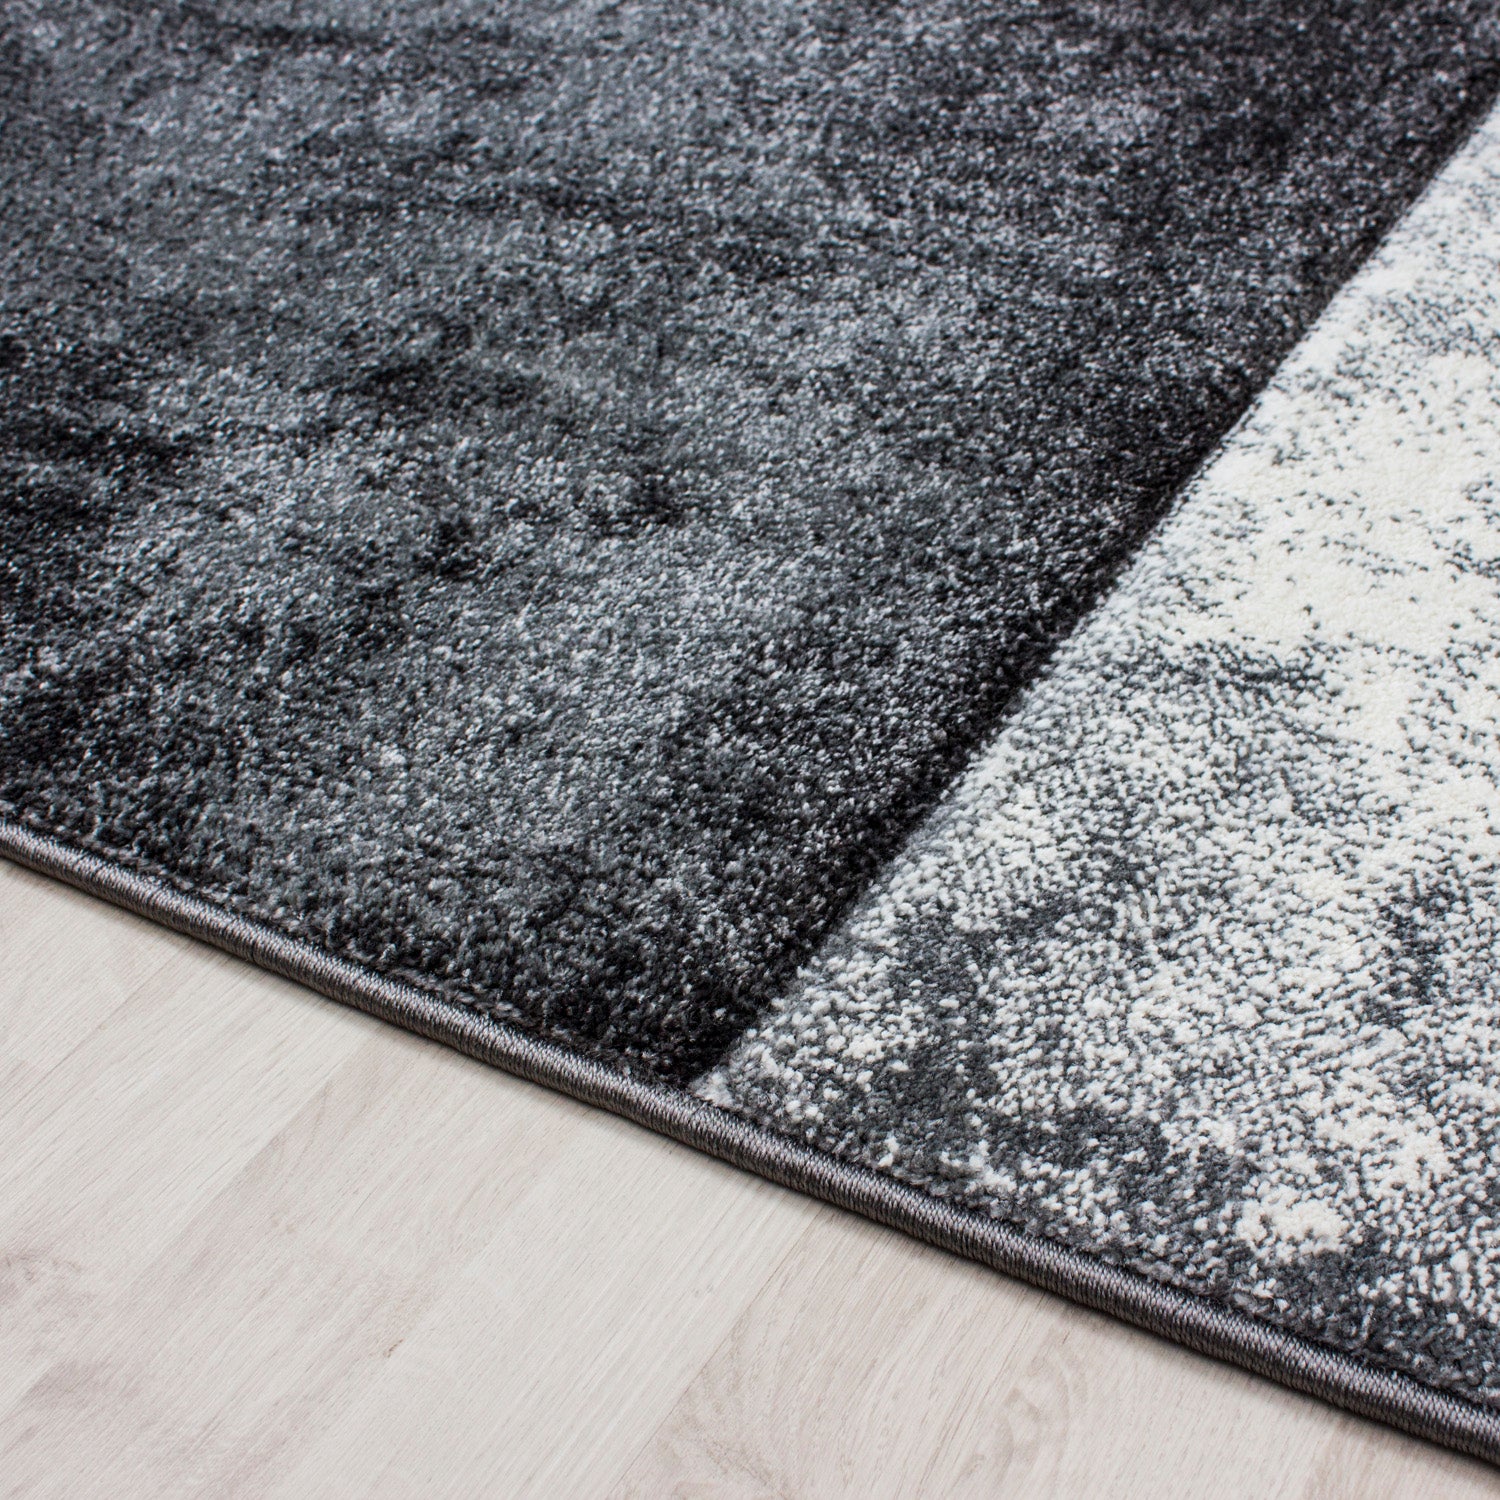 Kurzflor Design Teppich Rechteck Karo Muster Wohnzimmerteppich Grau Meliert